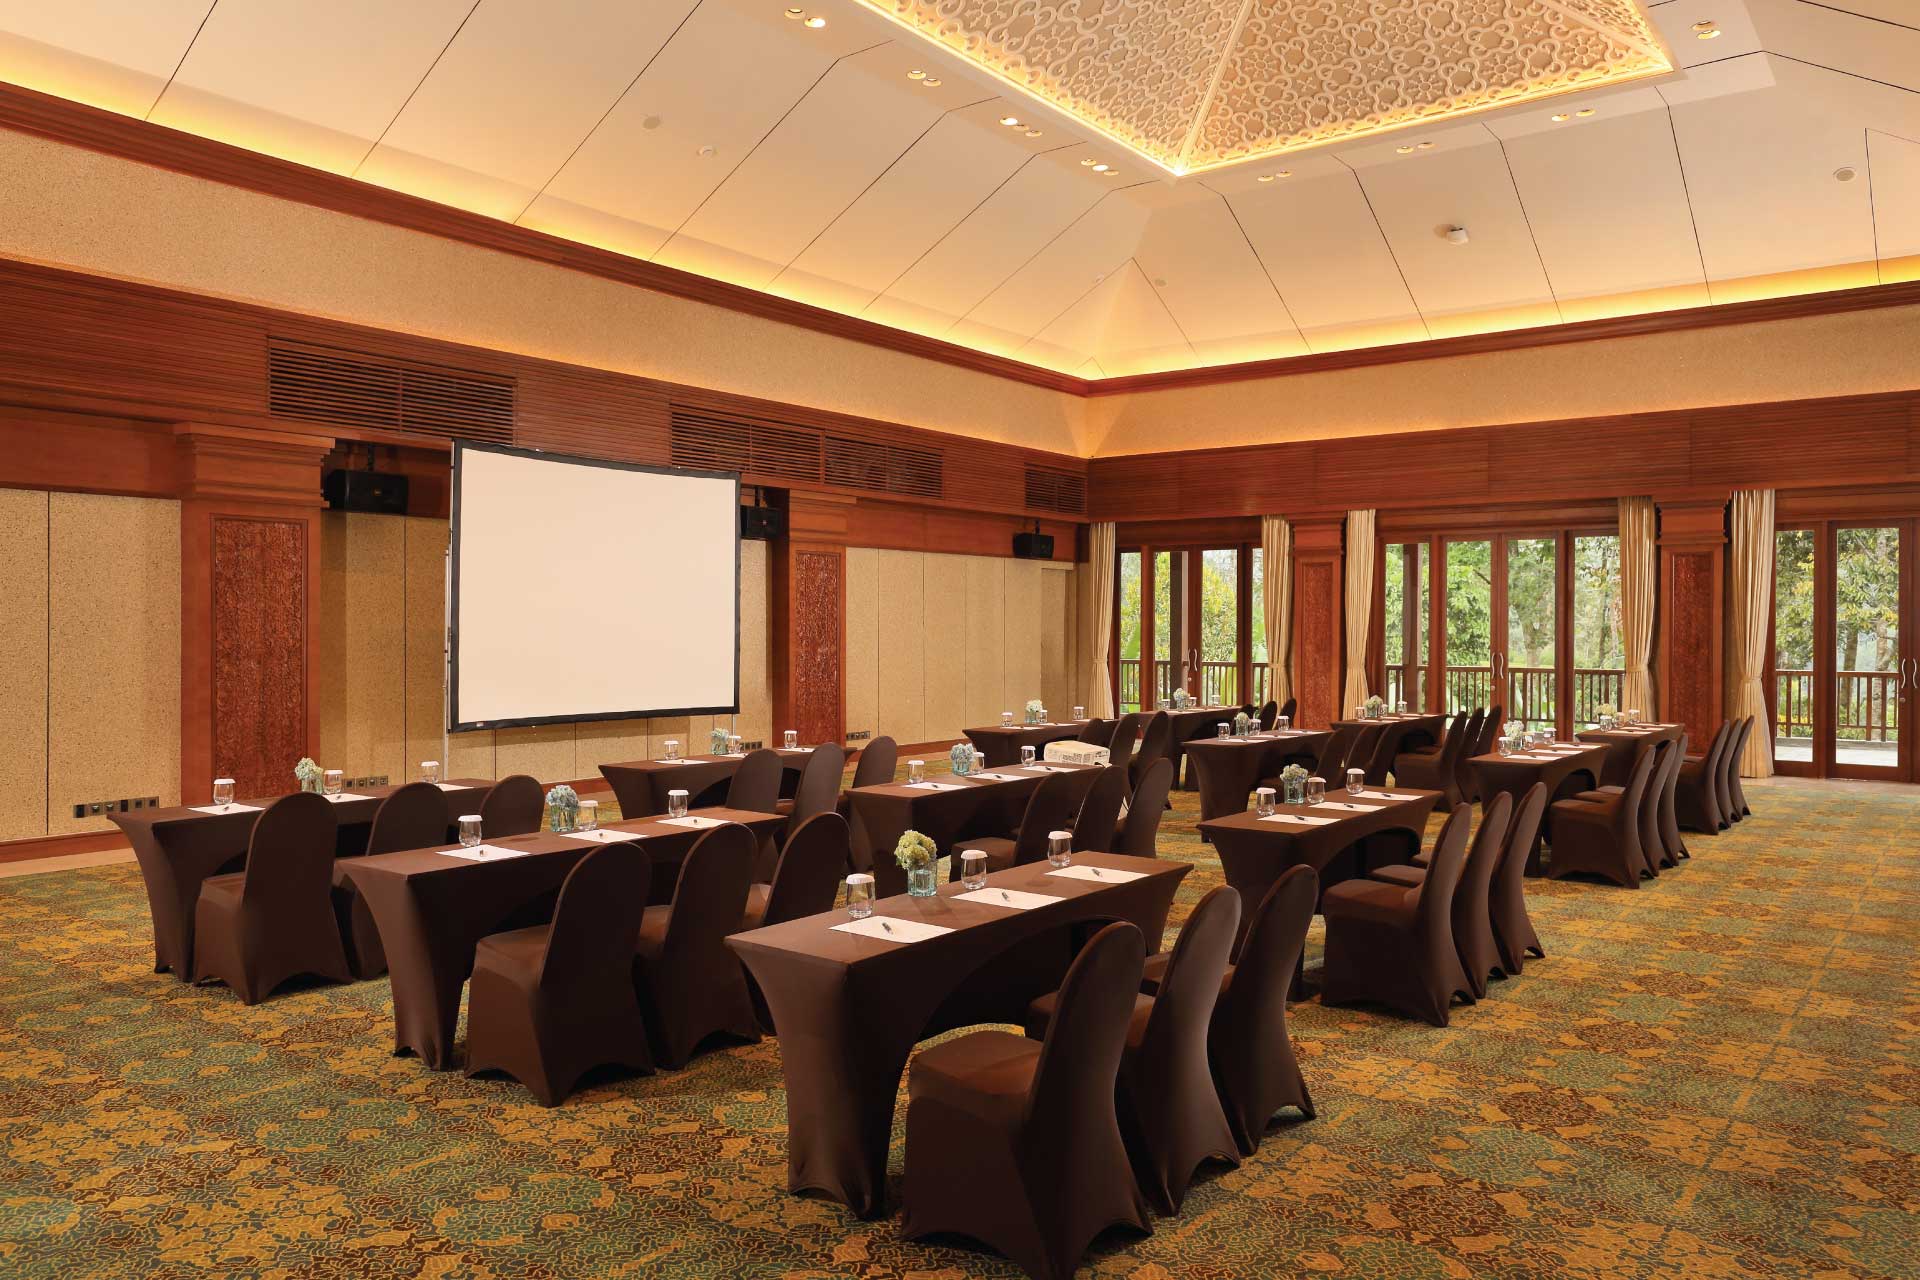 Meeting Venue Padma Resort Ubud